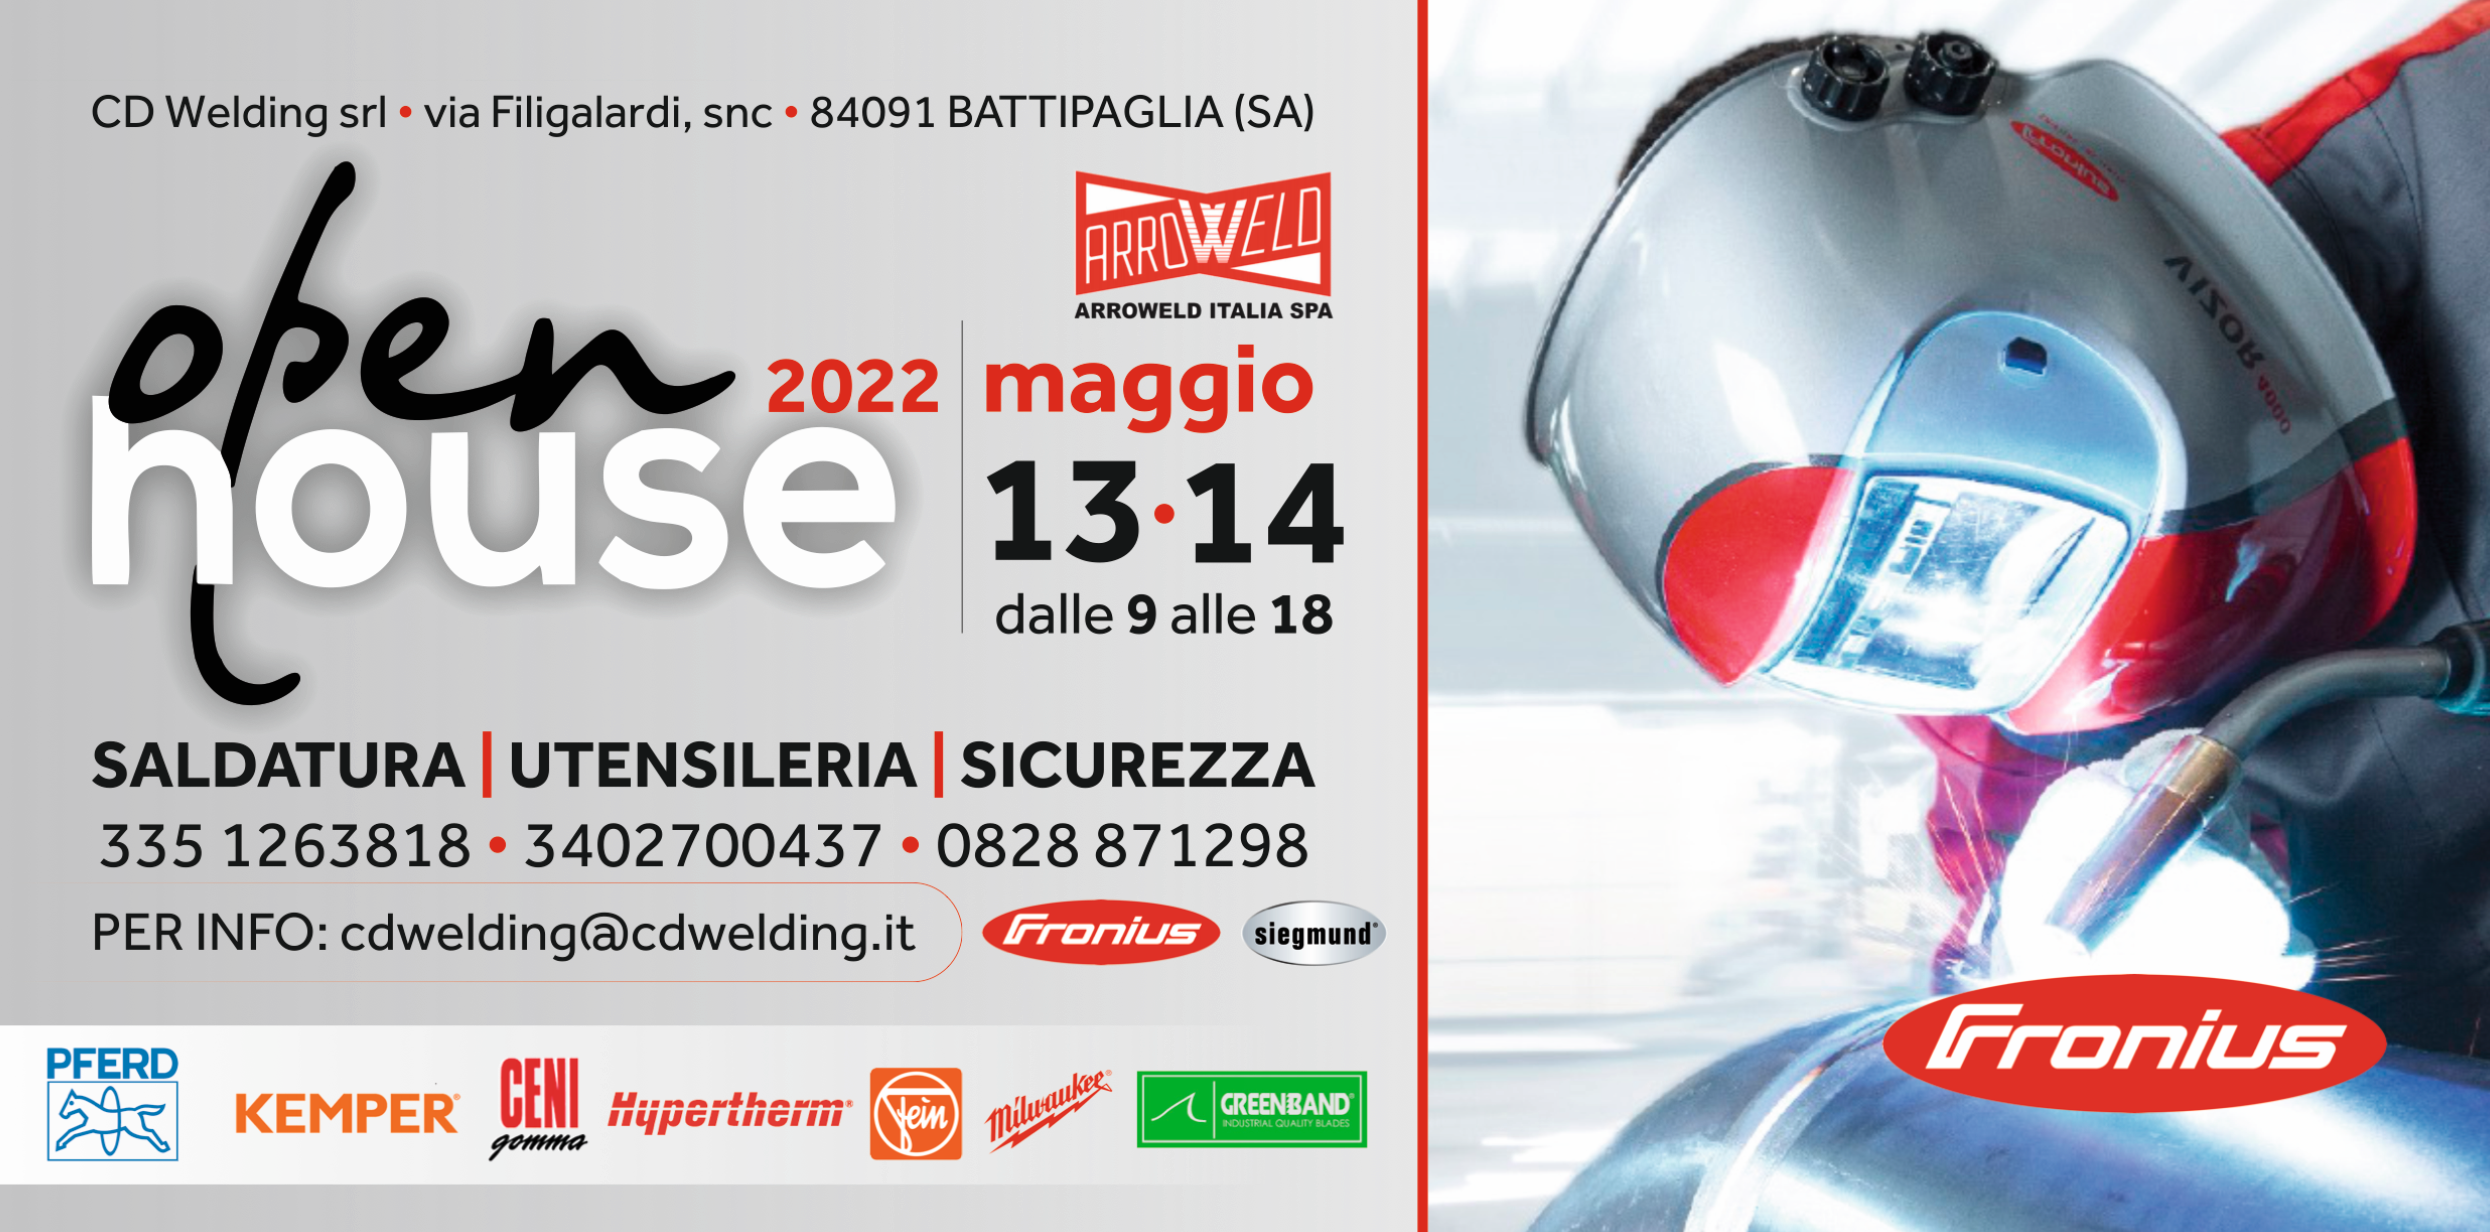 Open House CD Welding • 13/14 Maggio - Battipaglia (SA)